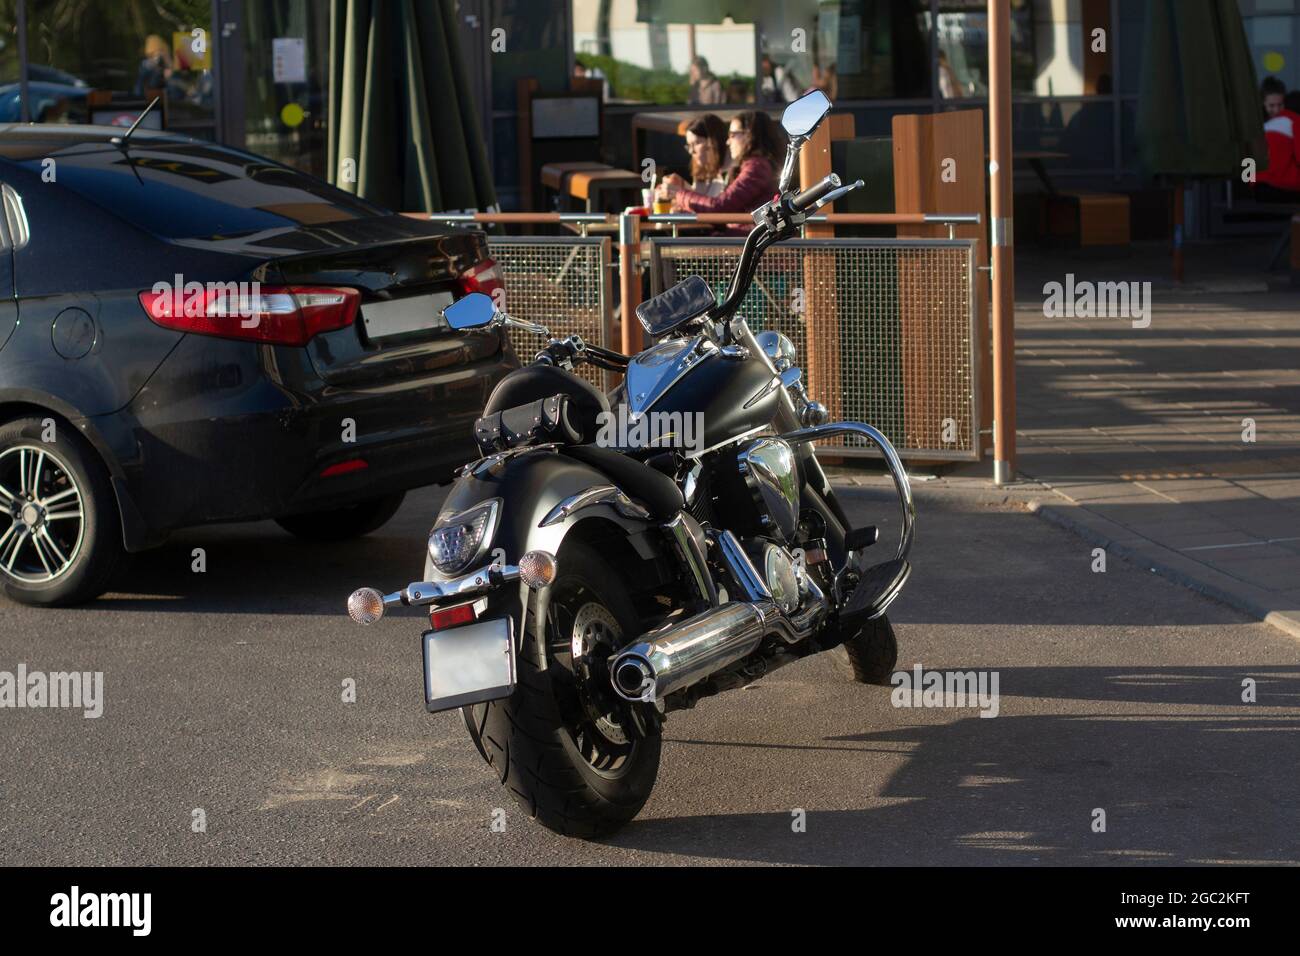 Ein Motorrad auf dem Parkplatz. Das Motorrad ist auf der Straße. Zweirädrige Fahrzeuge mit Benzinmotor. Klassischer Transport für einen Mann. Stockfoto